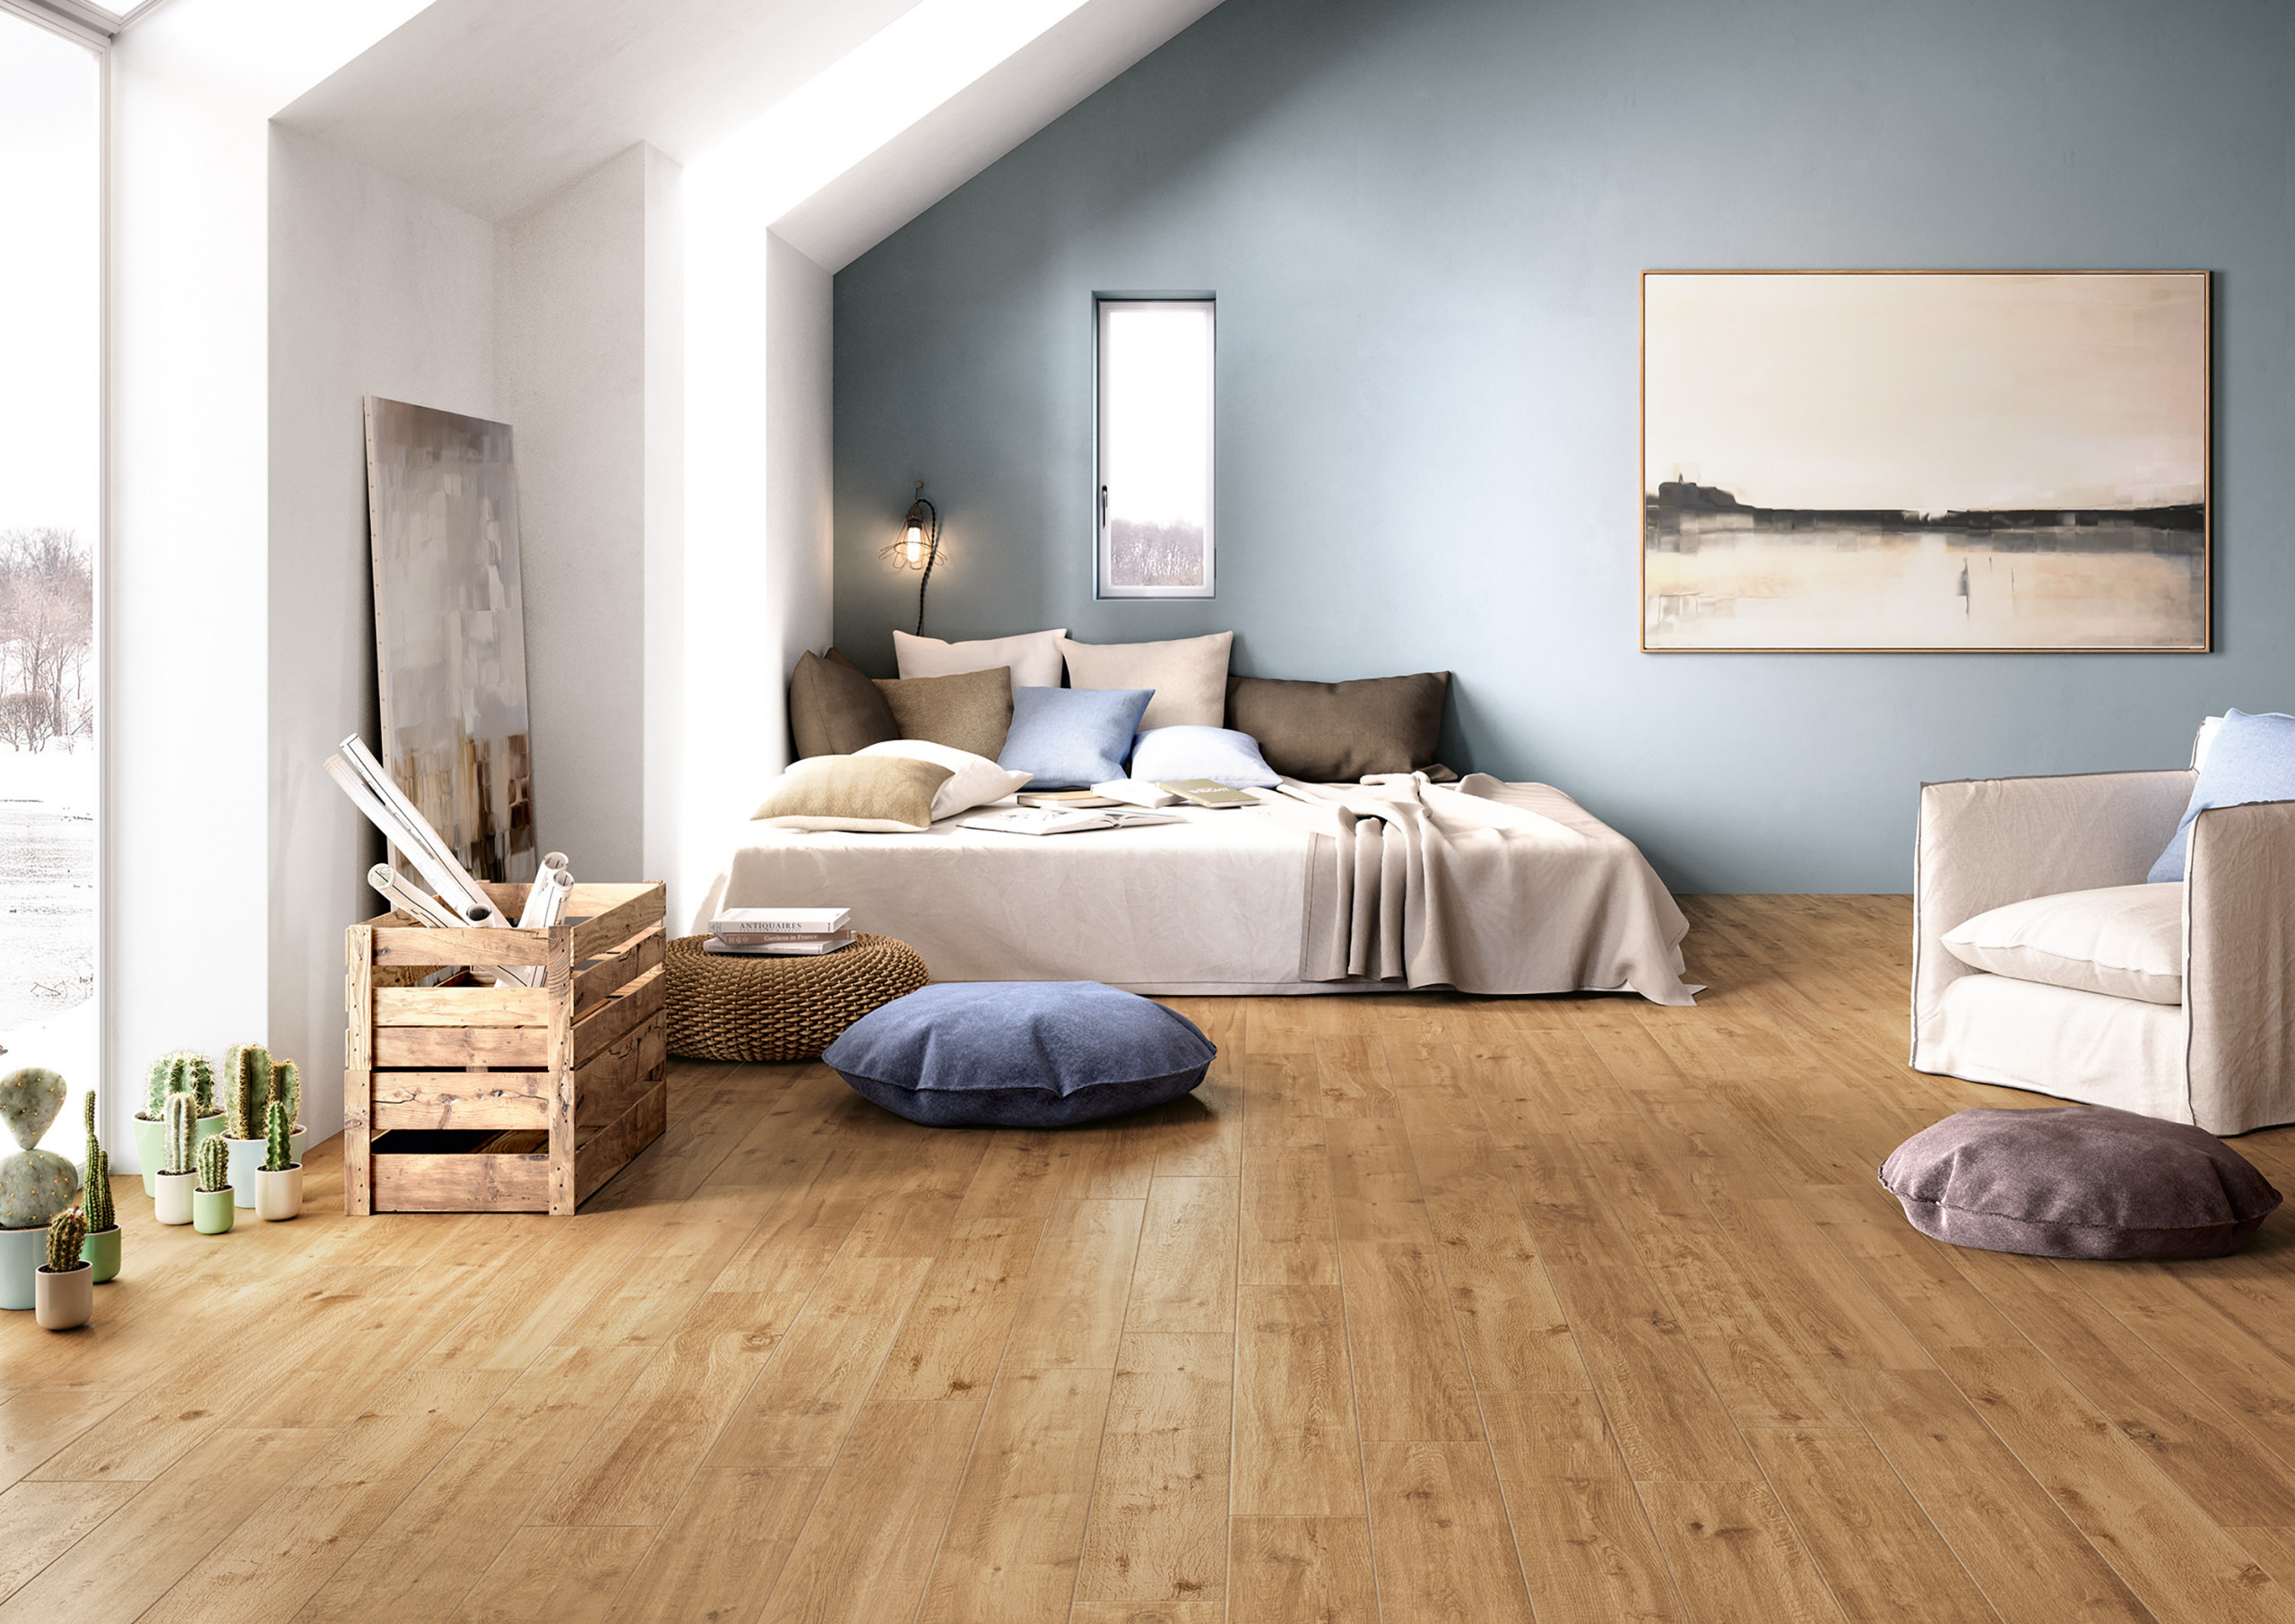 Floor Tiles Bedroom Ideas And Photos, Floor Tiles Design For Bedroom